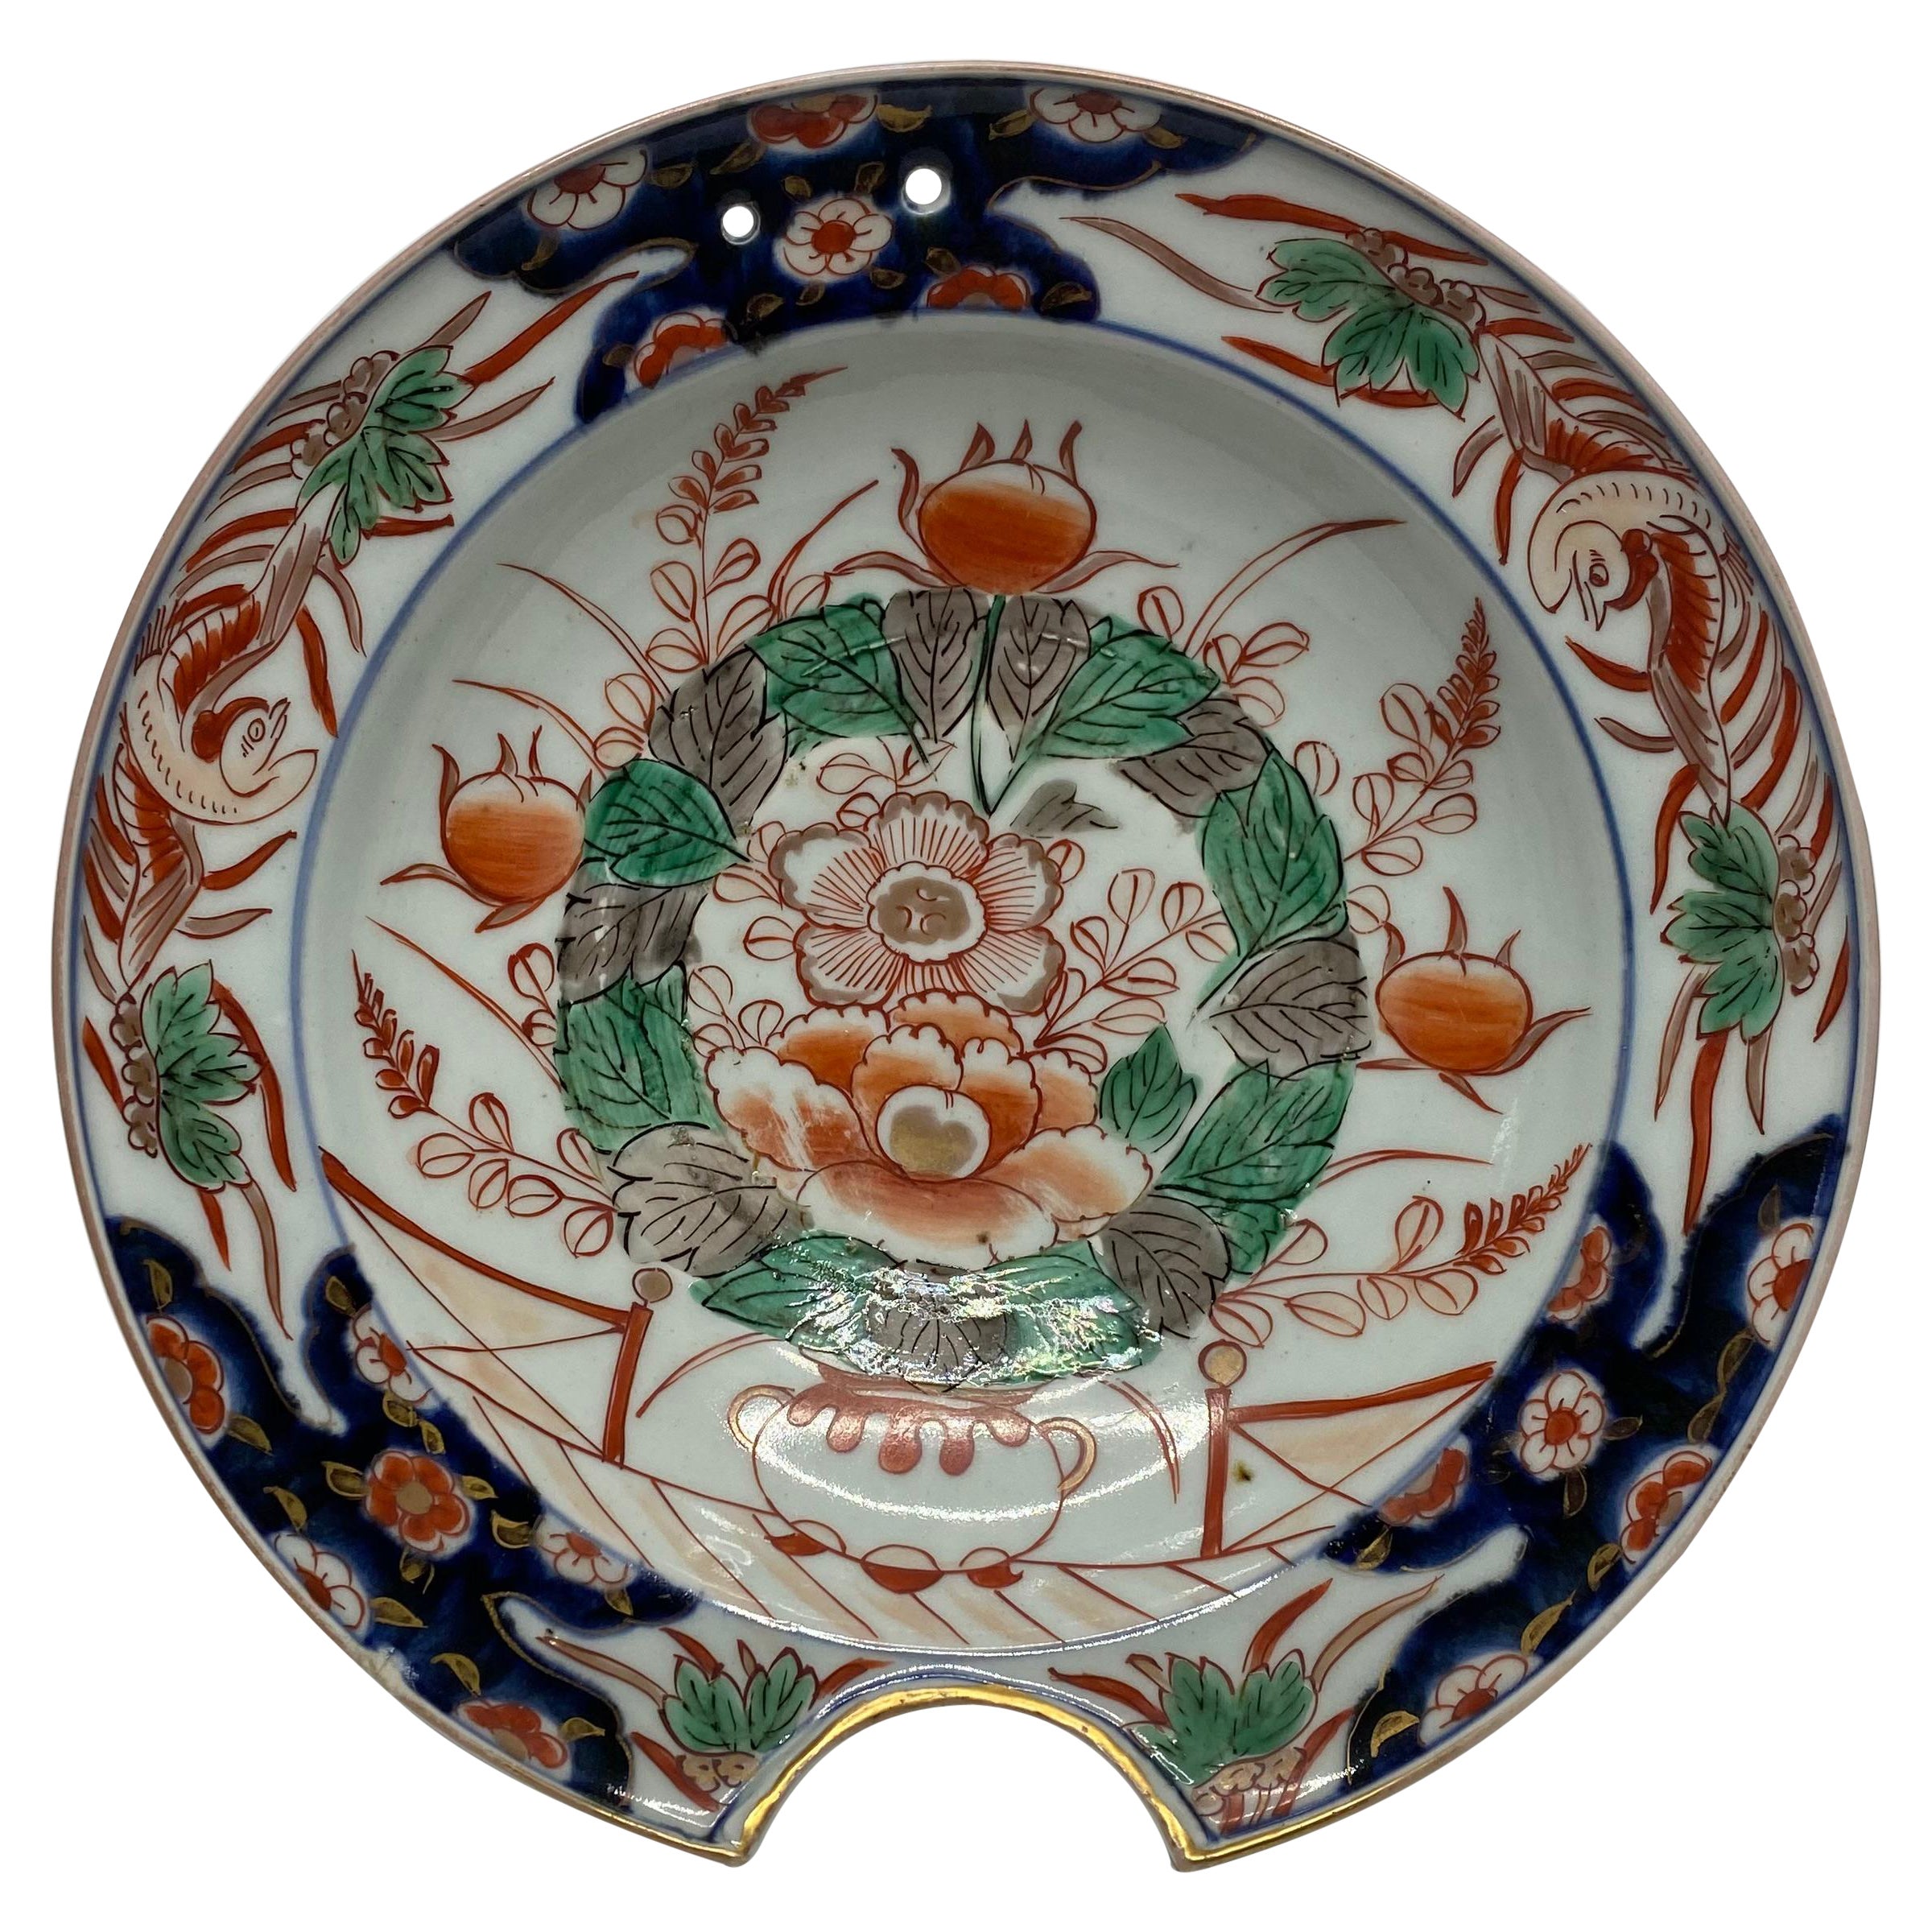 Imari porcelain barbers bowl, Arita, Japan, c. 1700. Edo Period.